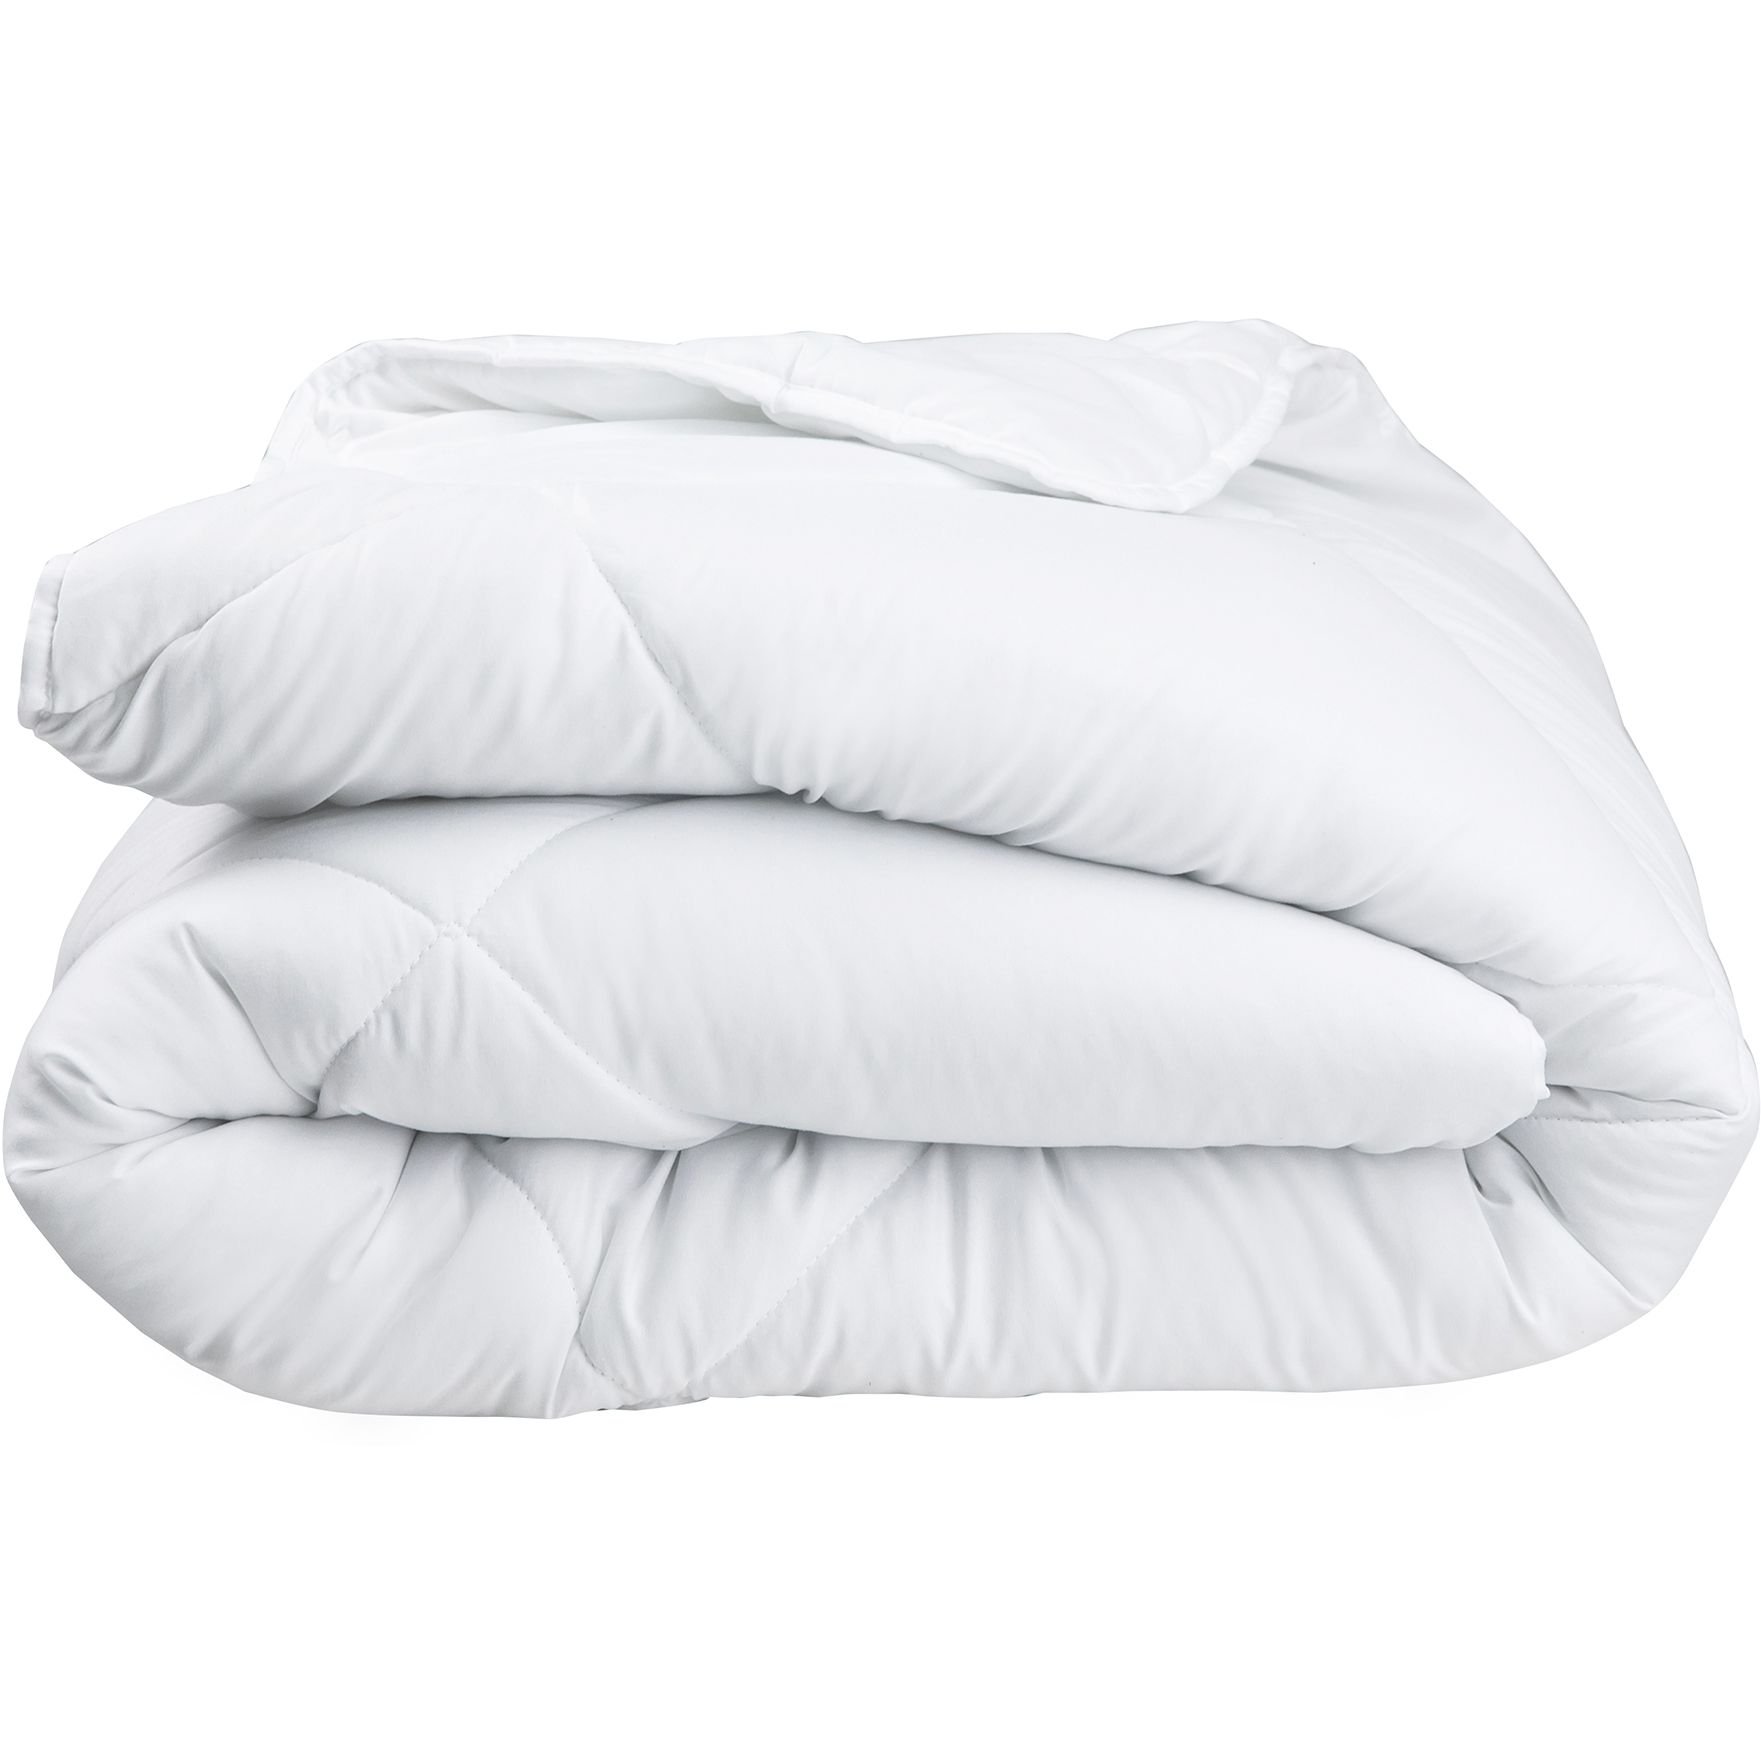 Одеяло ТЕП White Comfort 200x220 белое (1-02556_00000) - фото 1